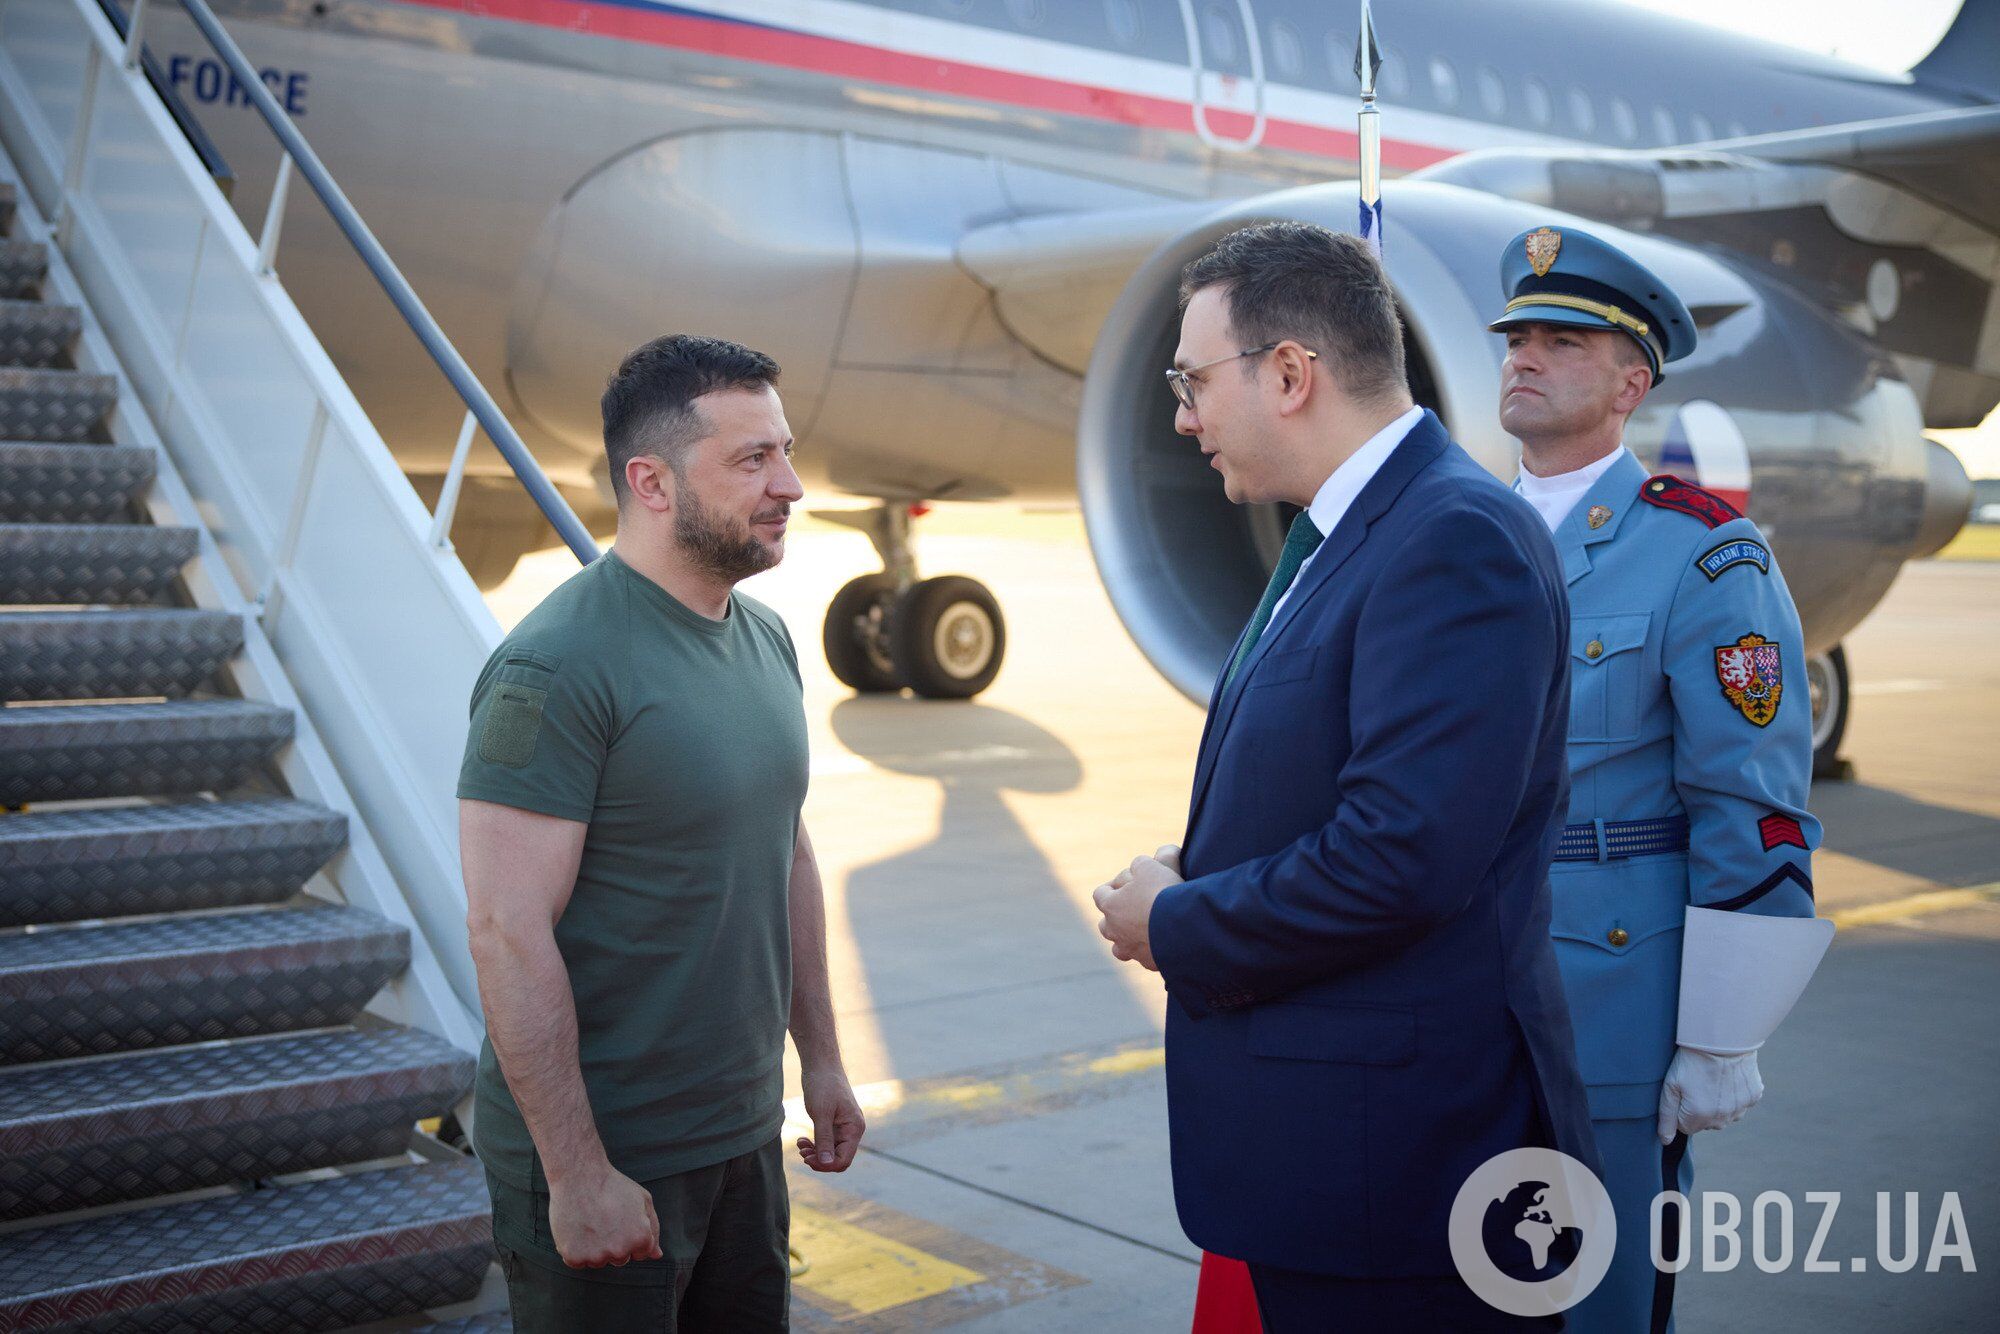 Зеленский совершил рабочий визит в Чехию: подробности поездки. Фото и видео